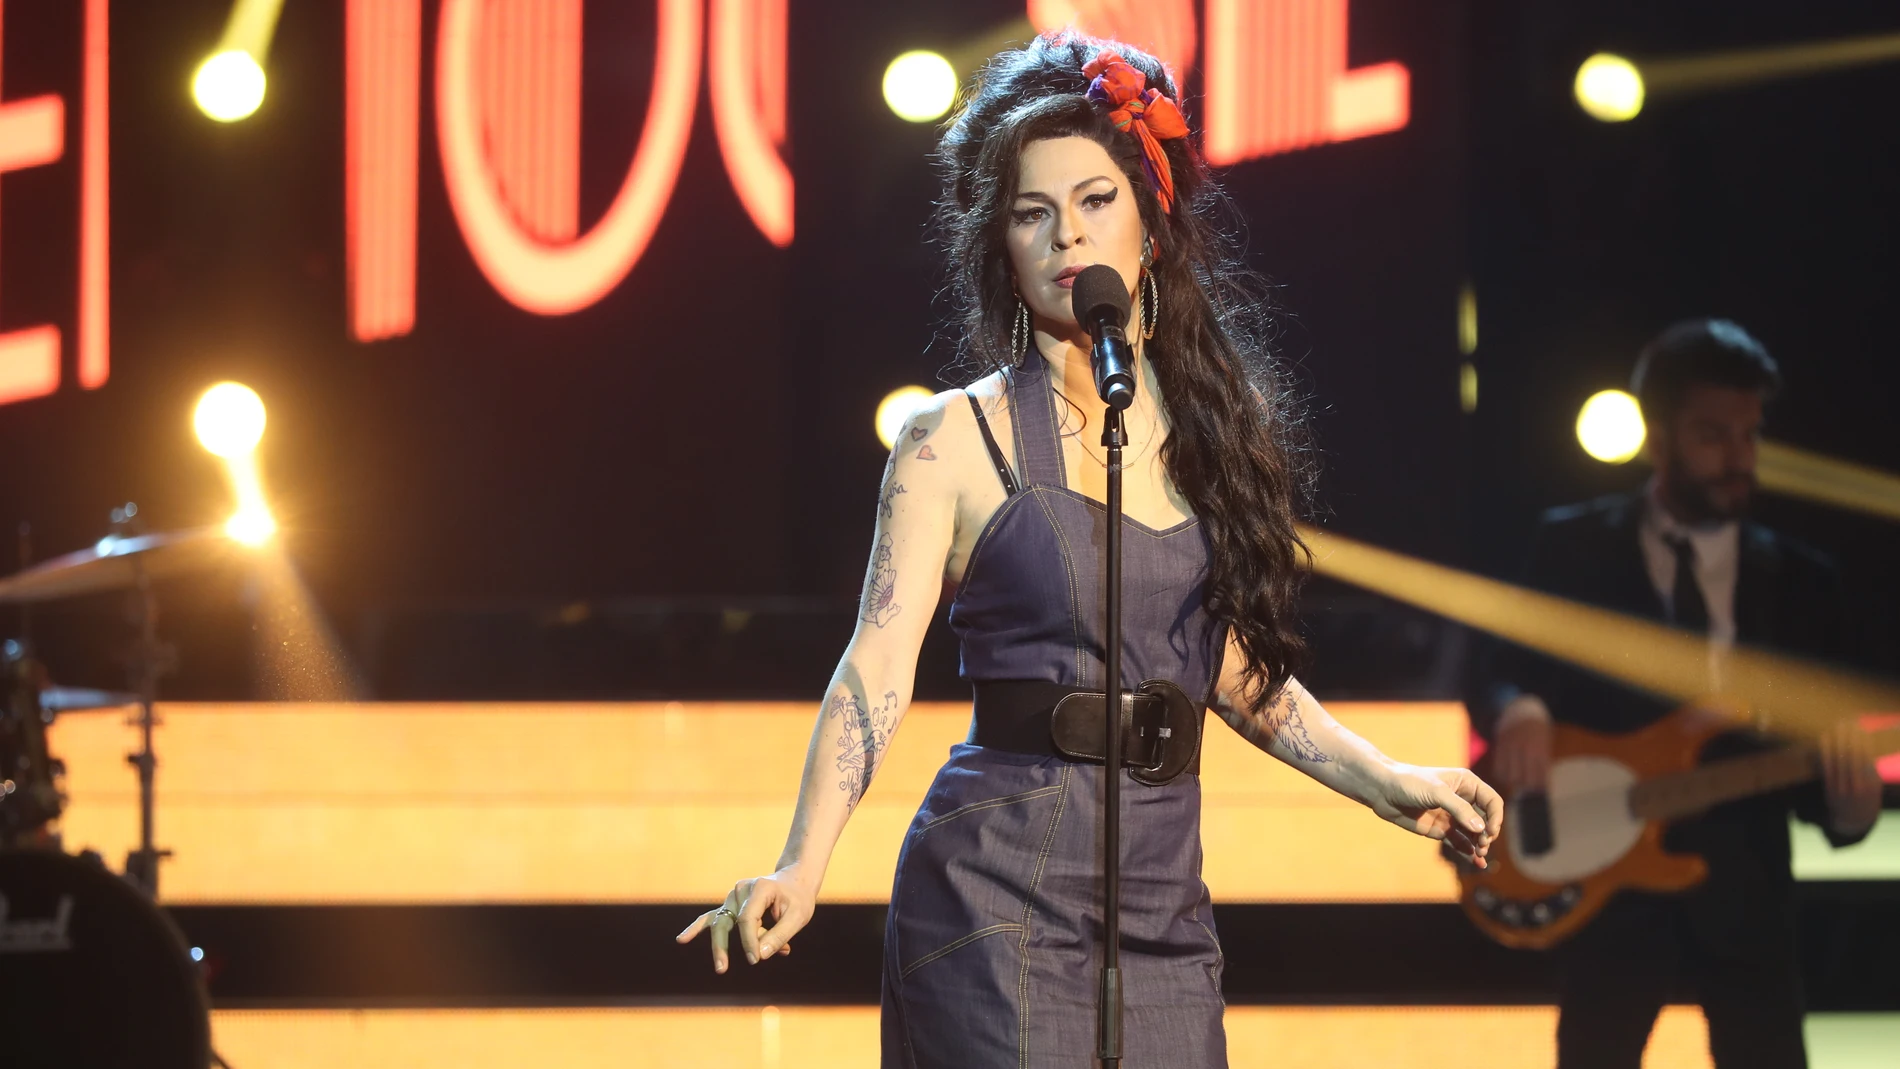 Una Amy Winehouse toledana y su tema ‘Back to black’ aparece en ‘Tu cara no me suena todavía’ de la mano de Rosana Gea